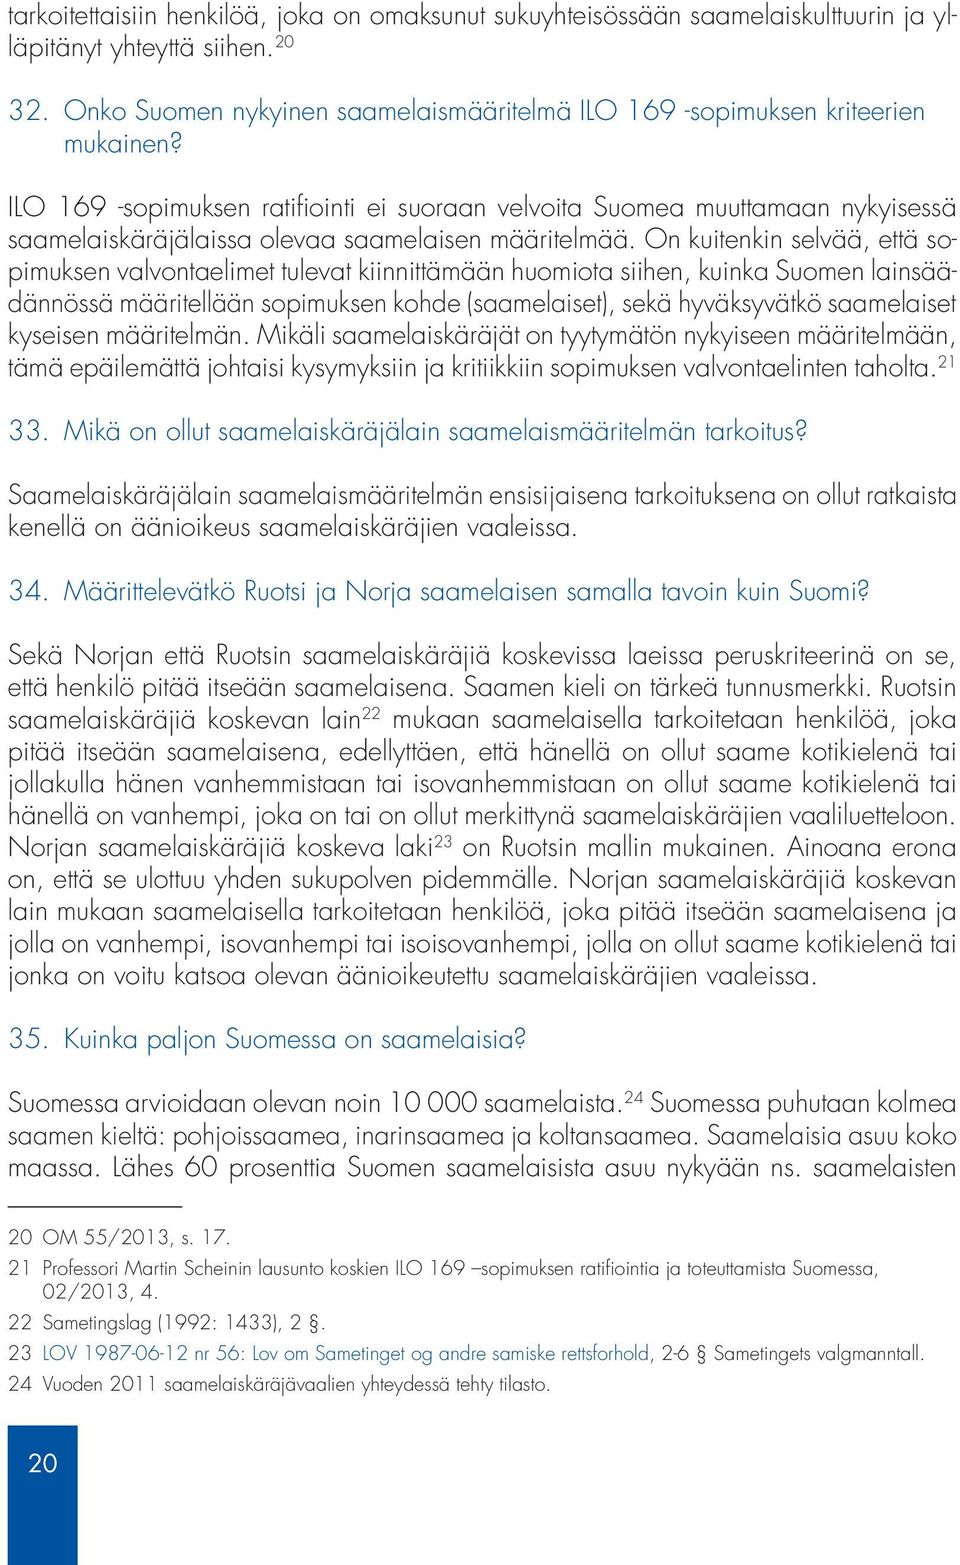 ILO 169 -sopimuksen ratifiointi ei suoraan velvoita Suomea muuttamaan nykyisessä saamelaiskäräjälaissa olevaa saamelaisen määritelmää.